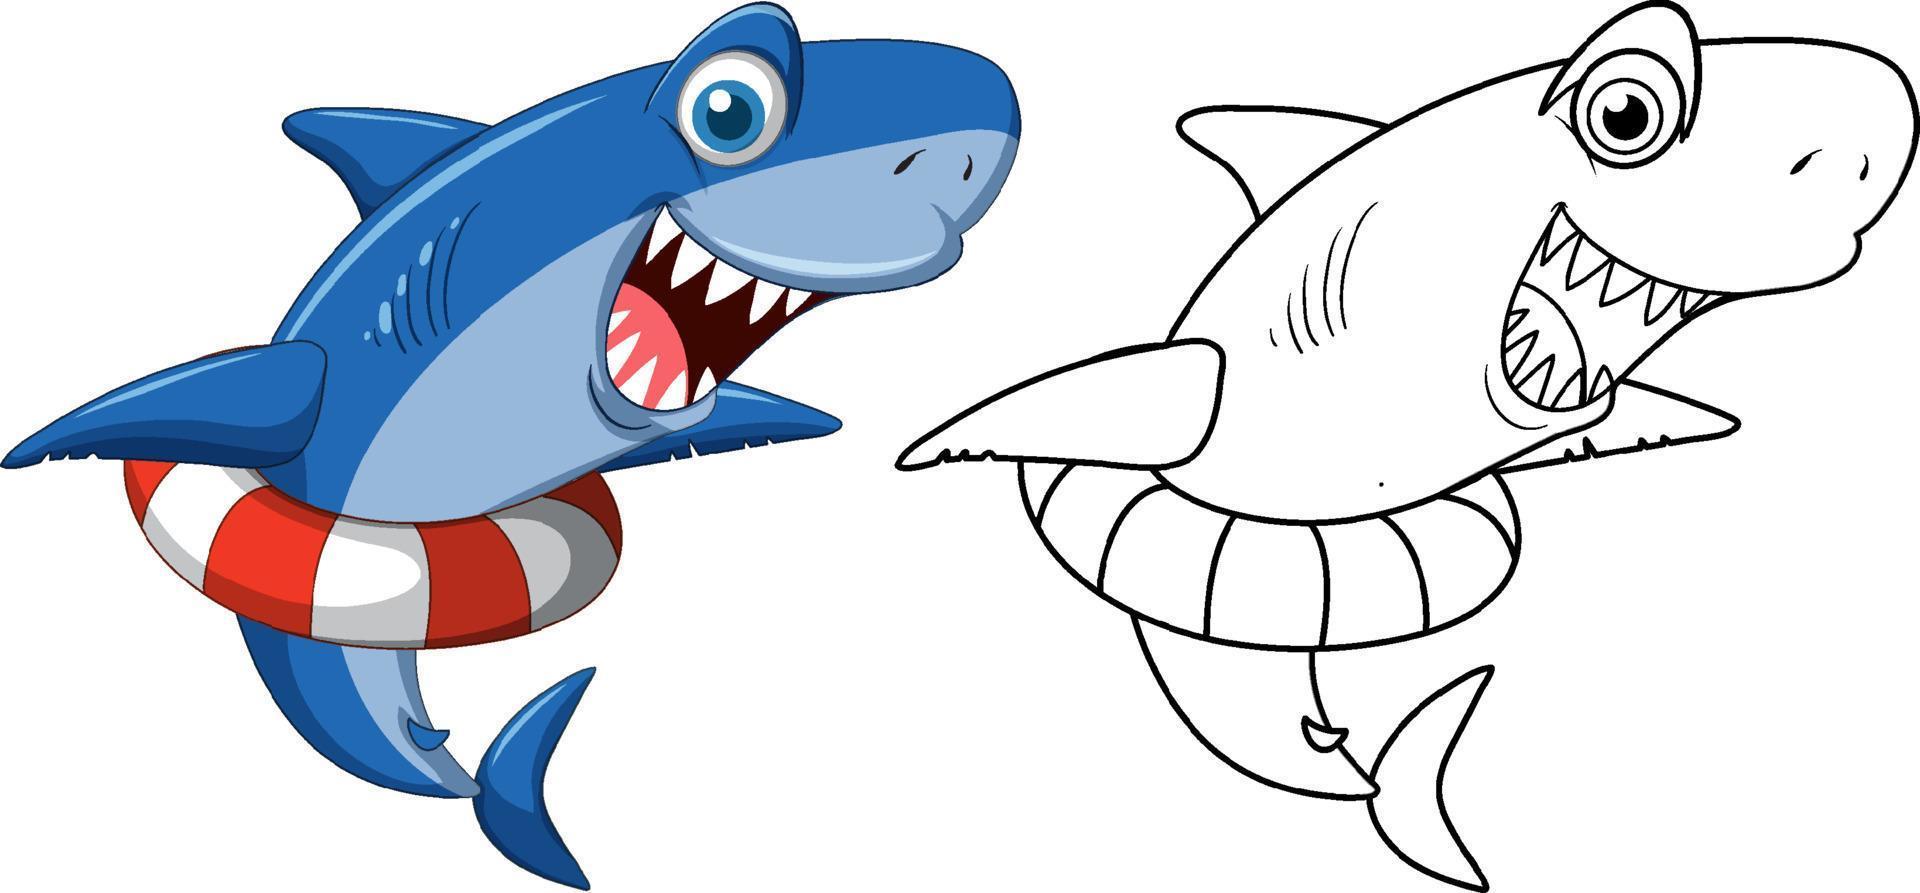 personagem animal doodle para tubarão vetor